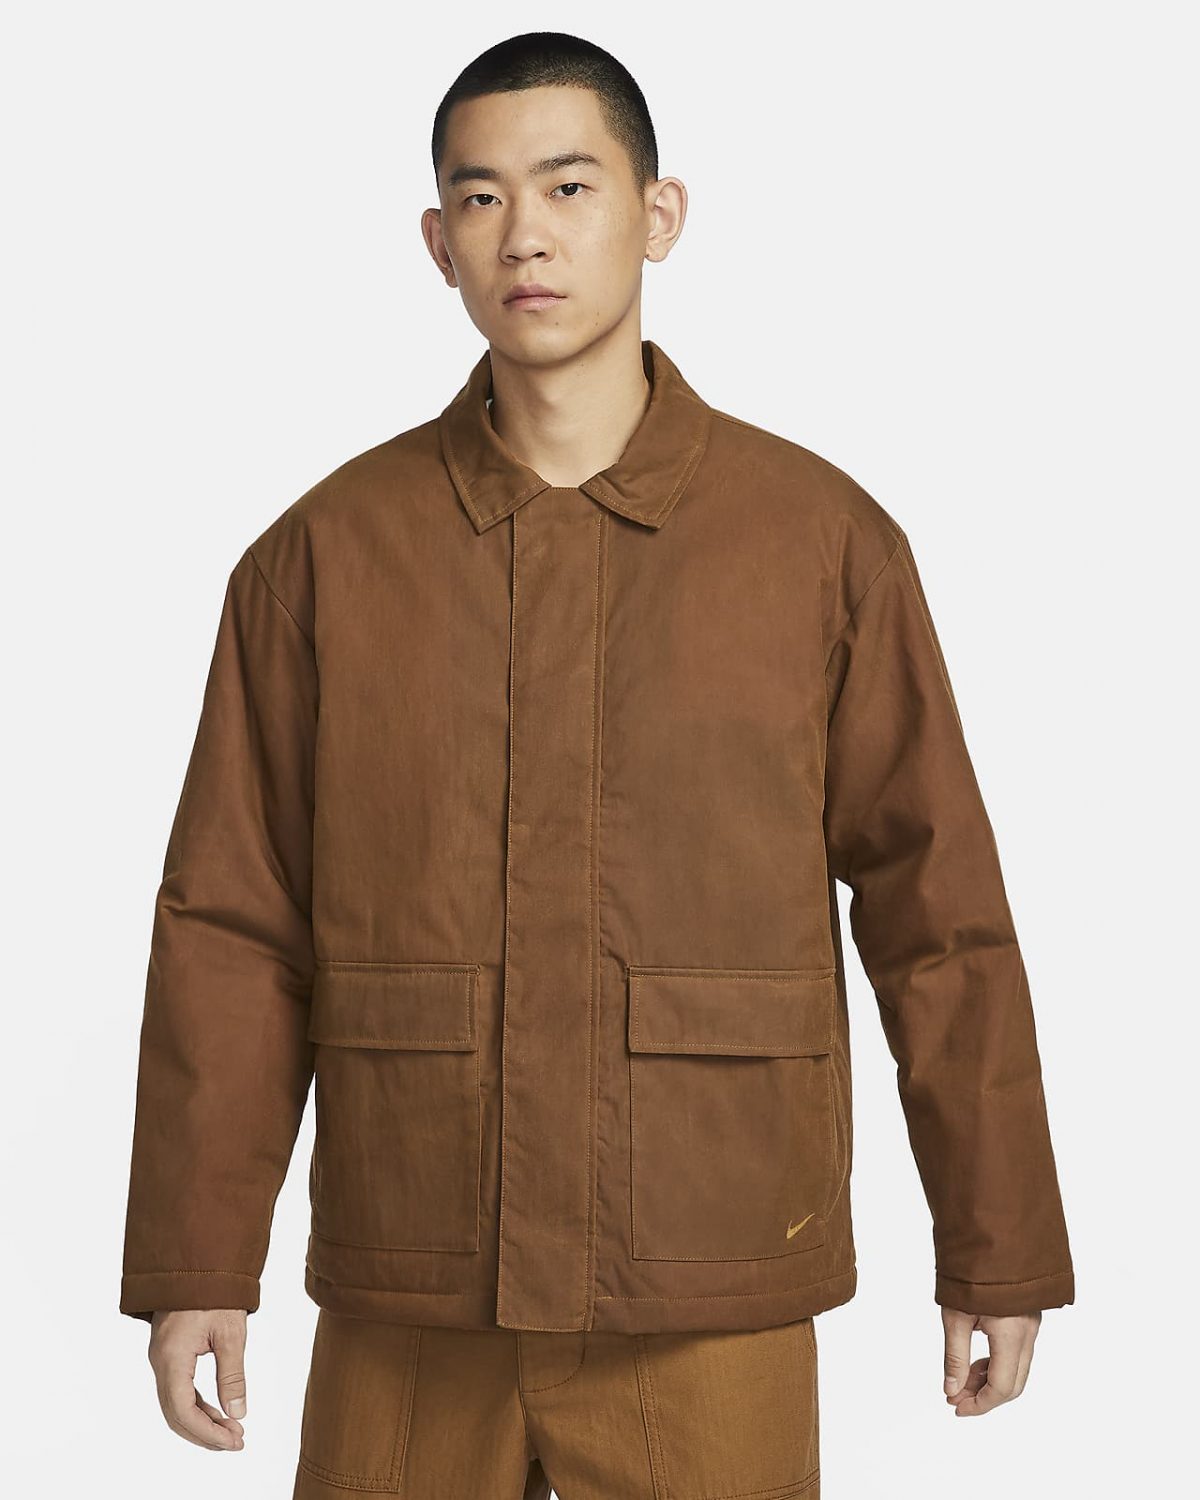 Мужская куртка Nike Life коричневая фото